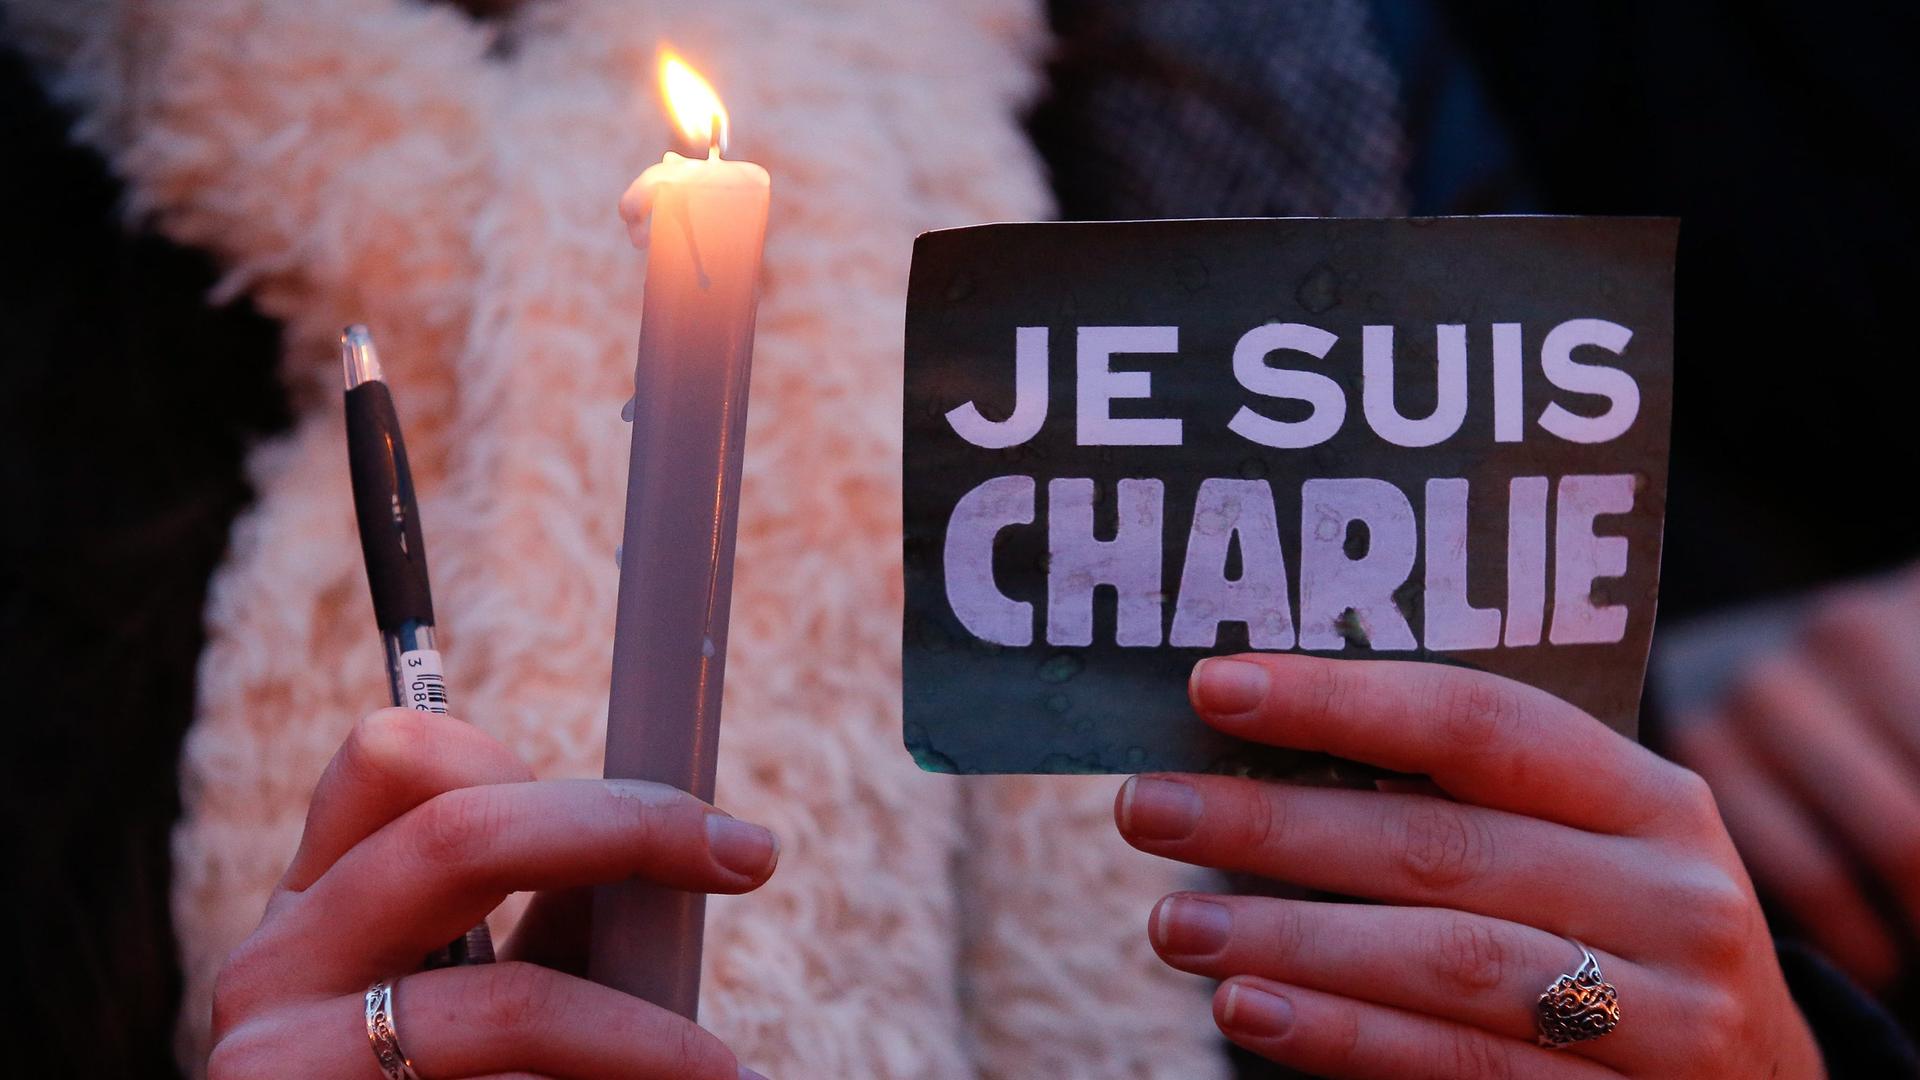 Eine Frau hält eine Kerze, einen Kugelschreiber und eine Schild mit der AUfschrift "Je suis Charlie"